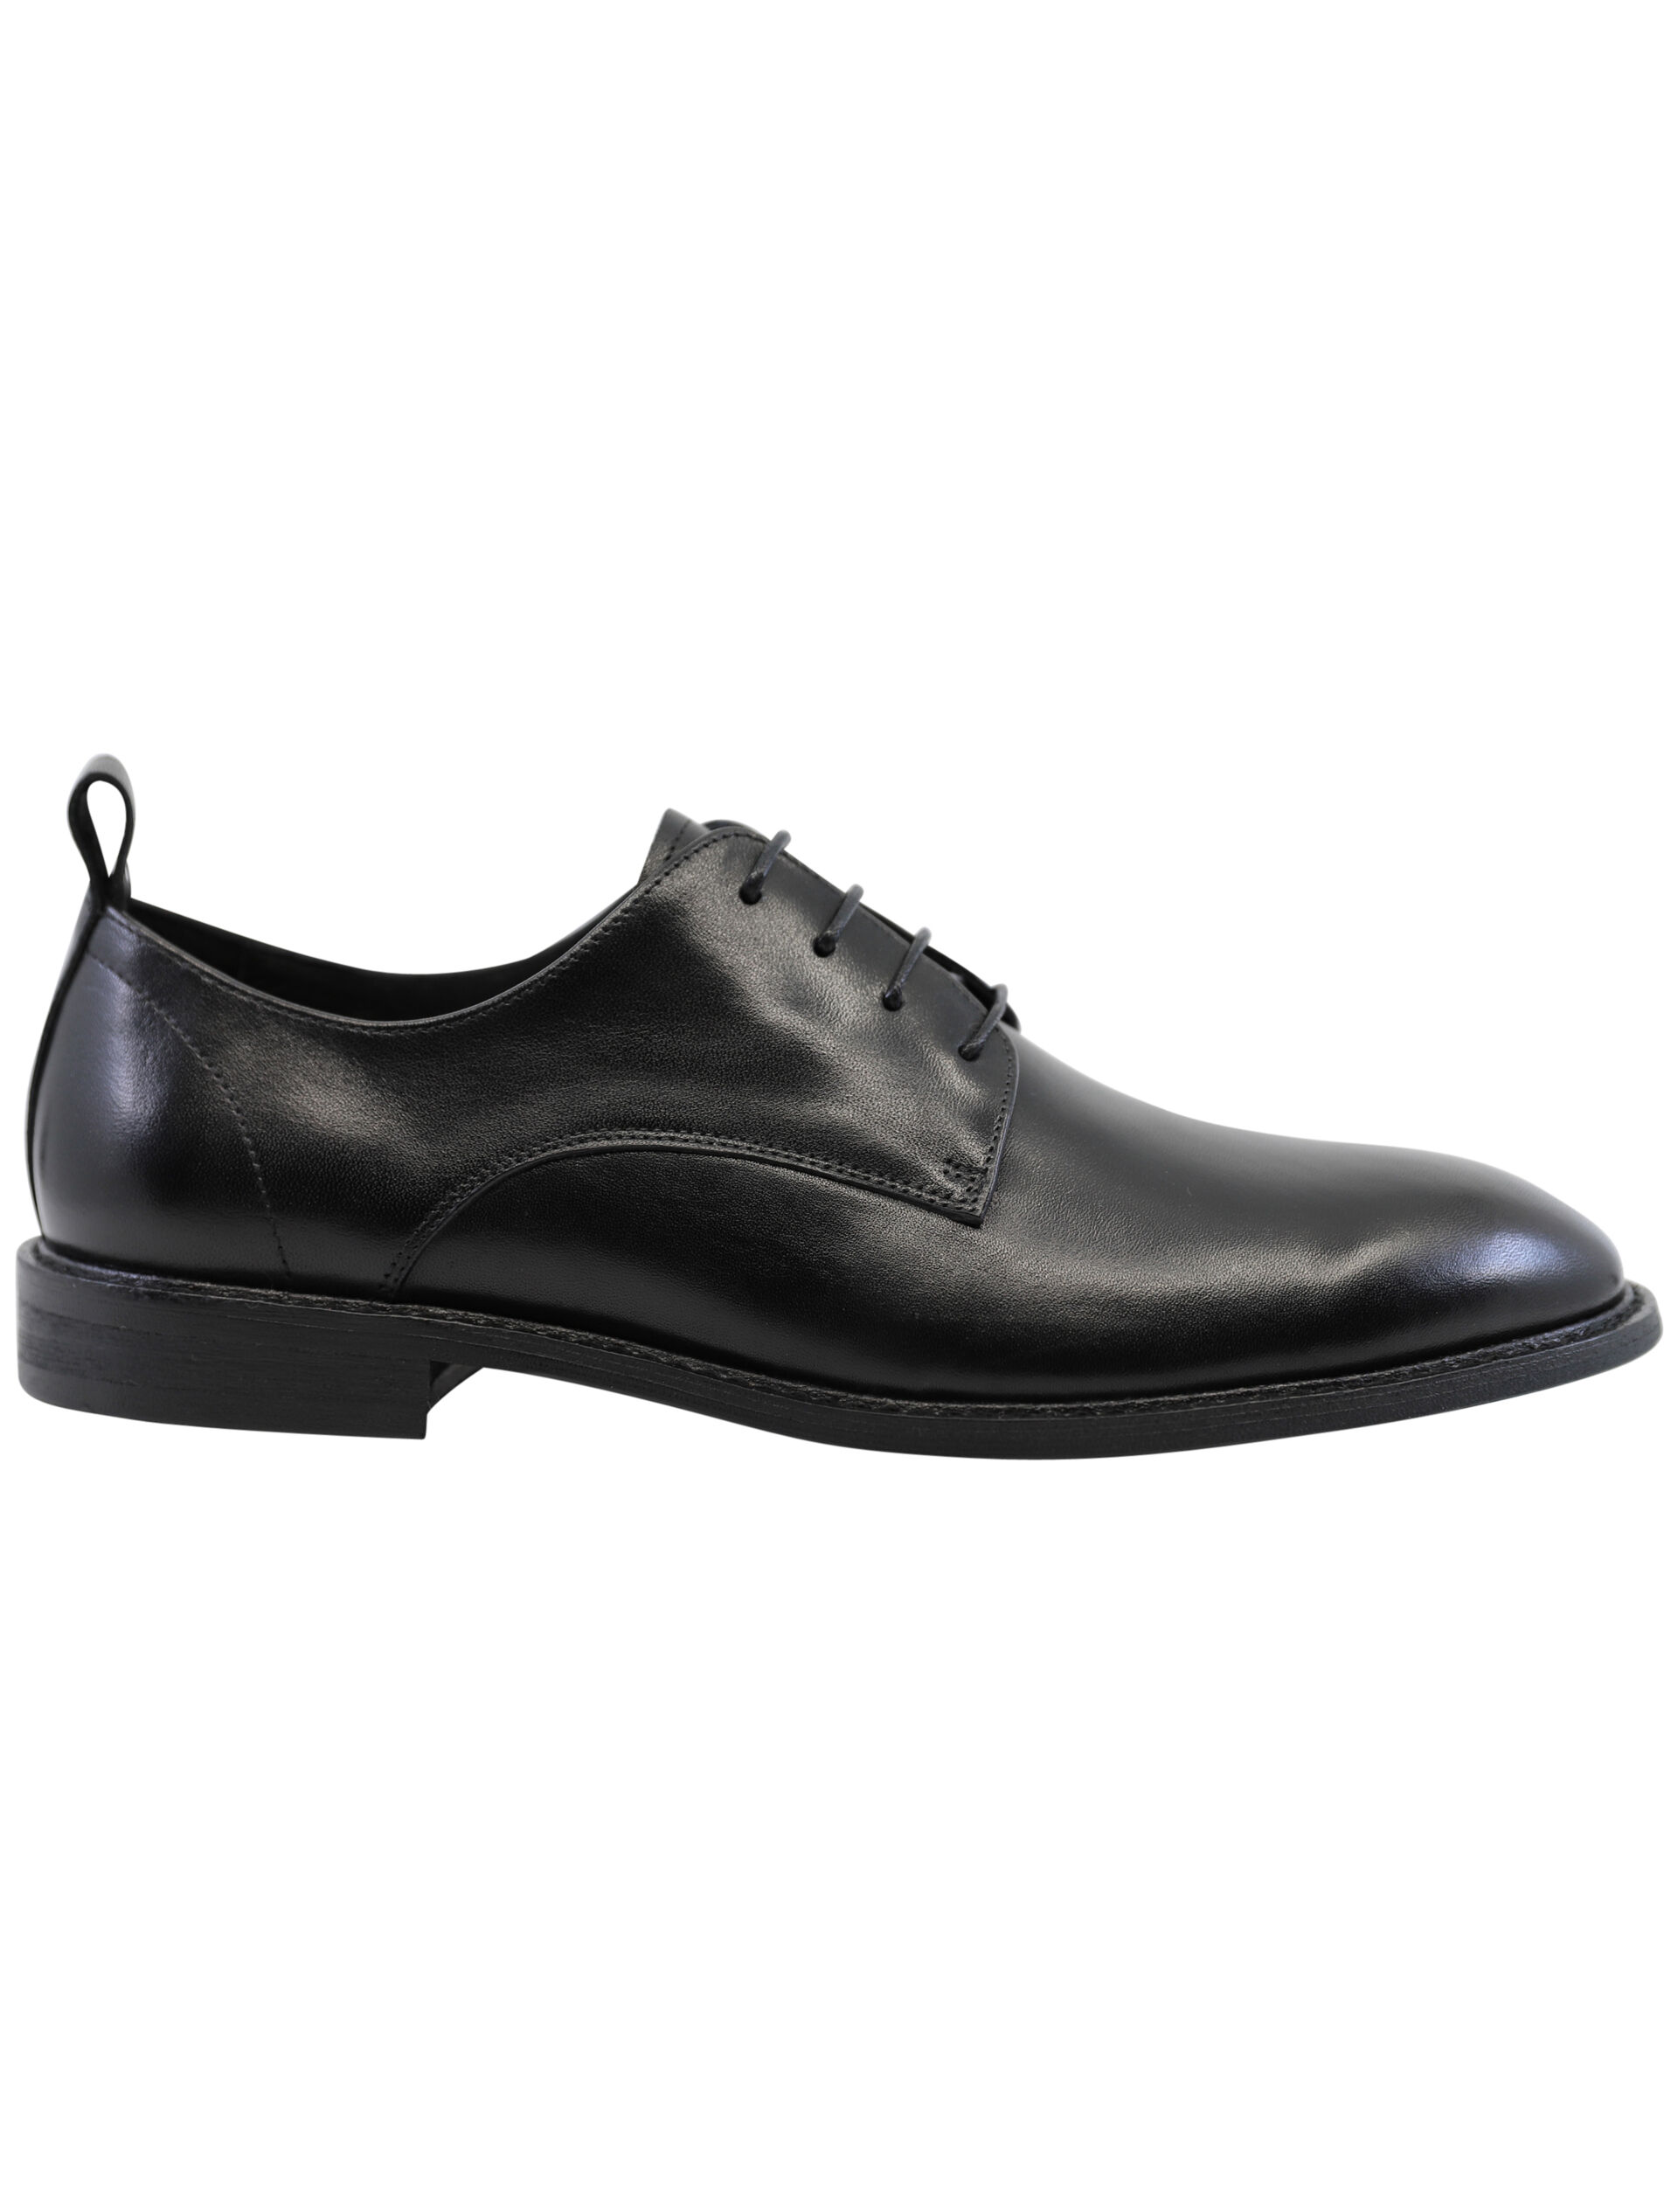 Business-Schuhe 30-992031